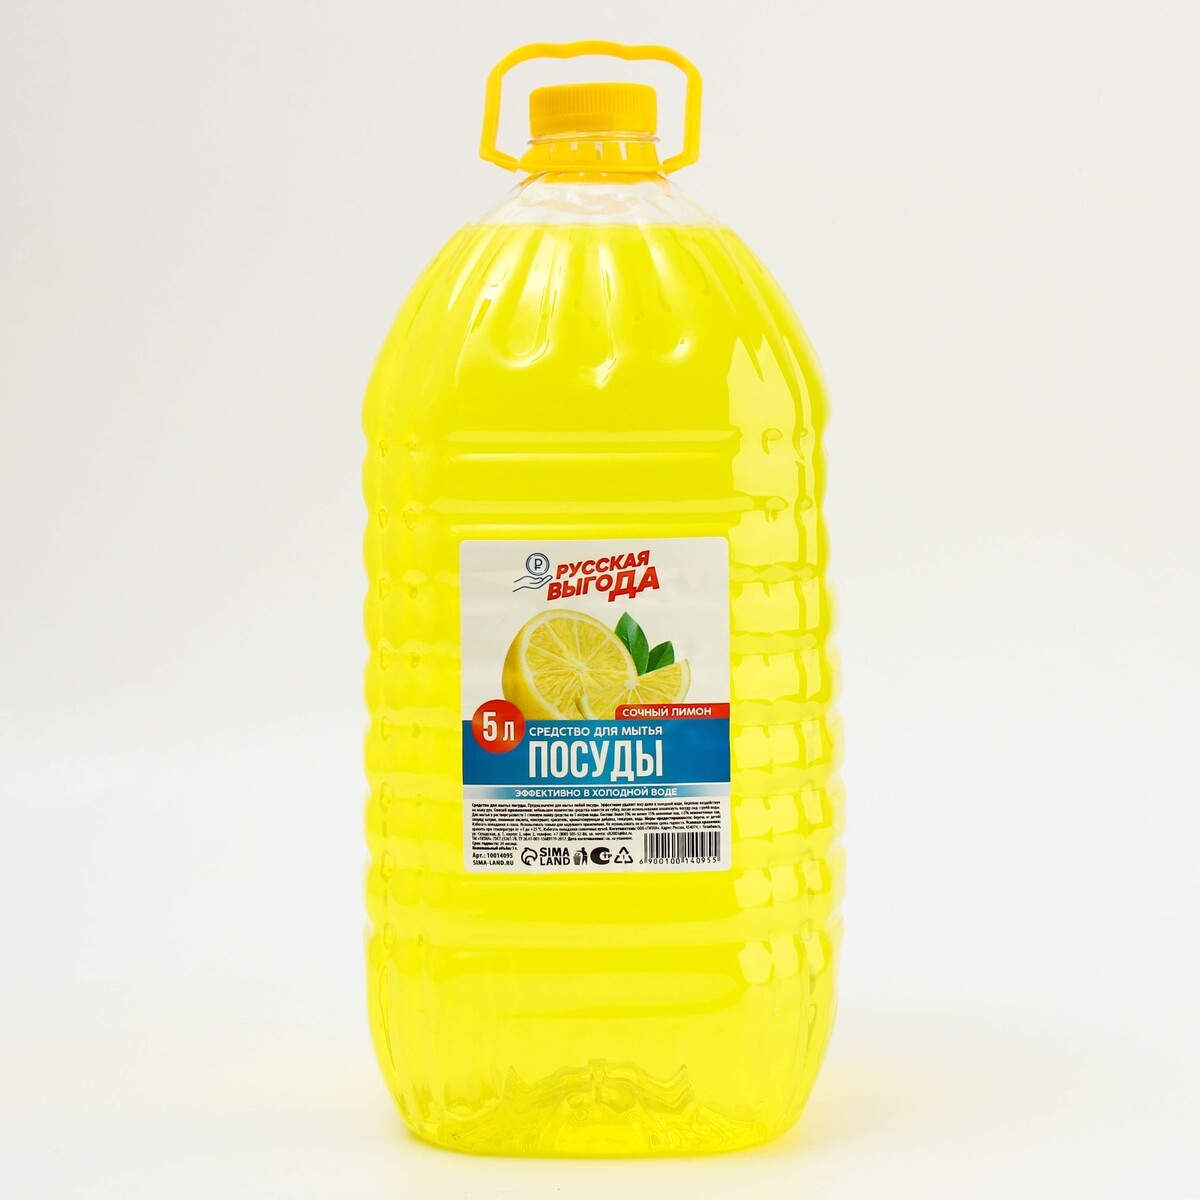 Средство для мытья посуды, аромат лимон, 5 л, русская выгода средство для мытья полов русская выгода